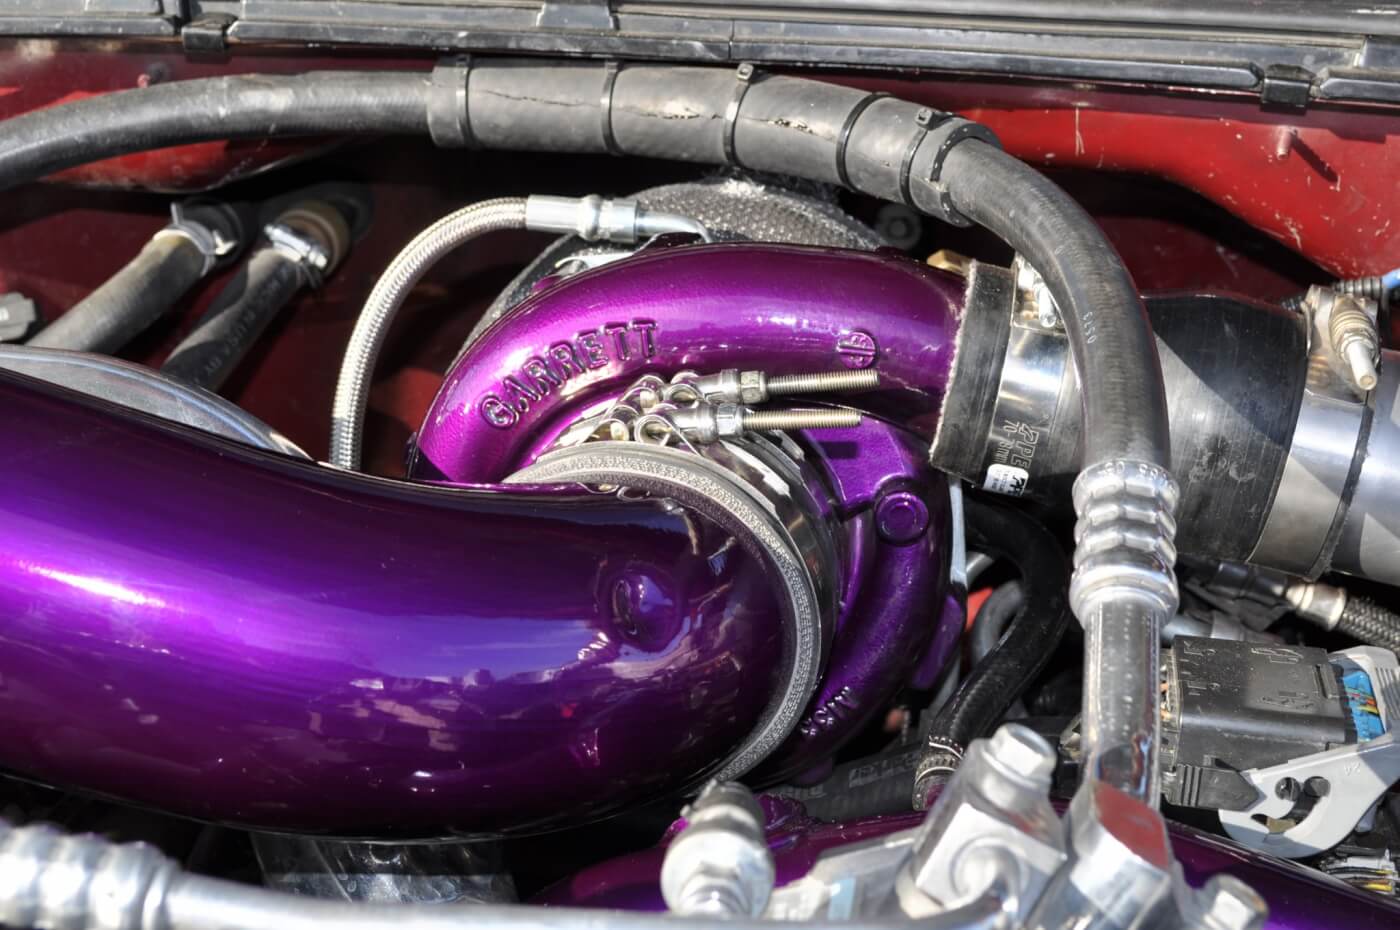 Garrett’s GT4094 turbocharger seen here on an LB7 Duramax